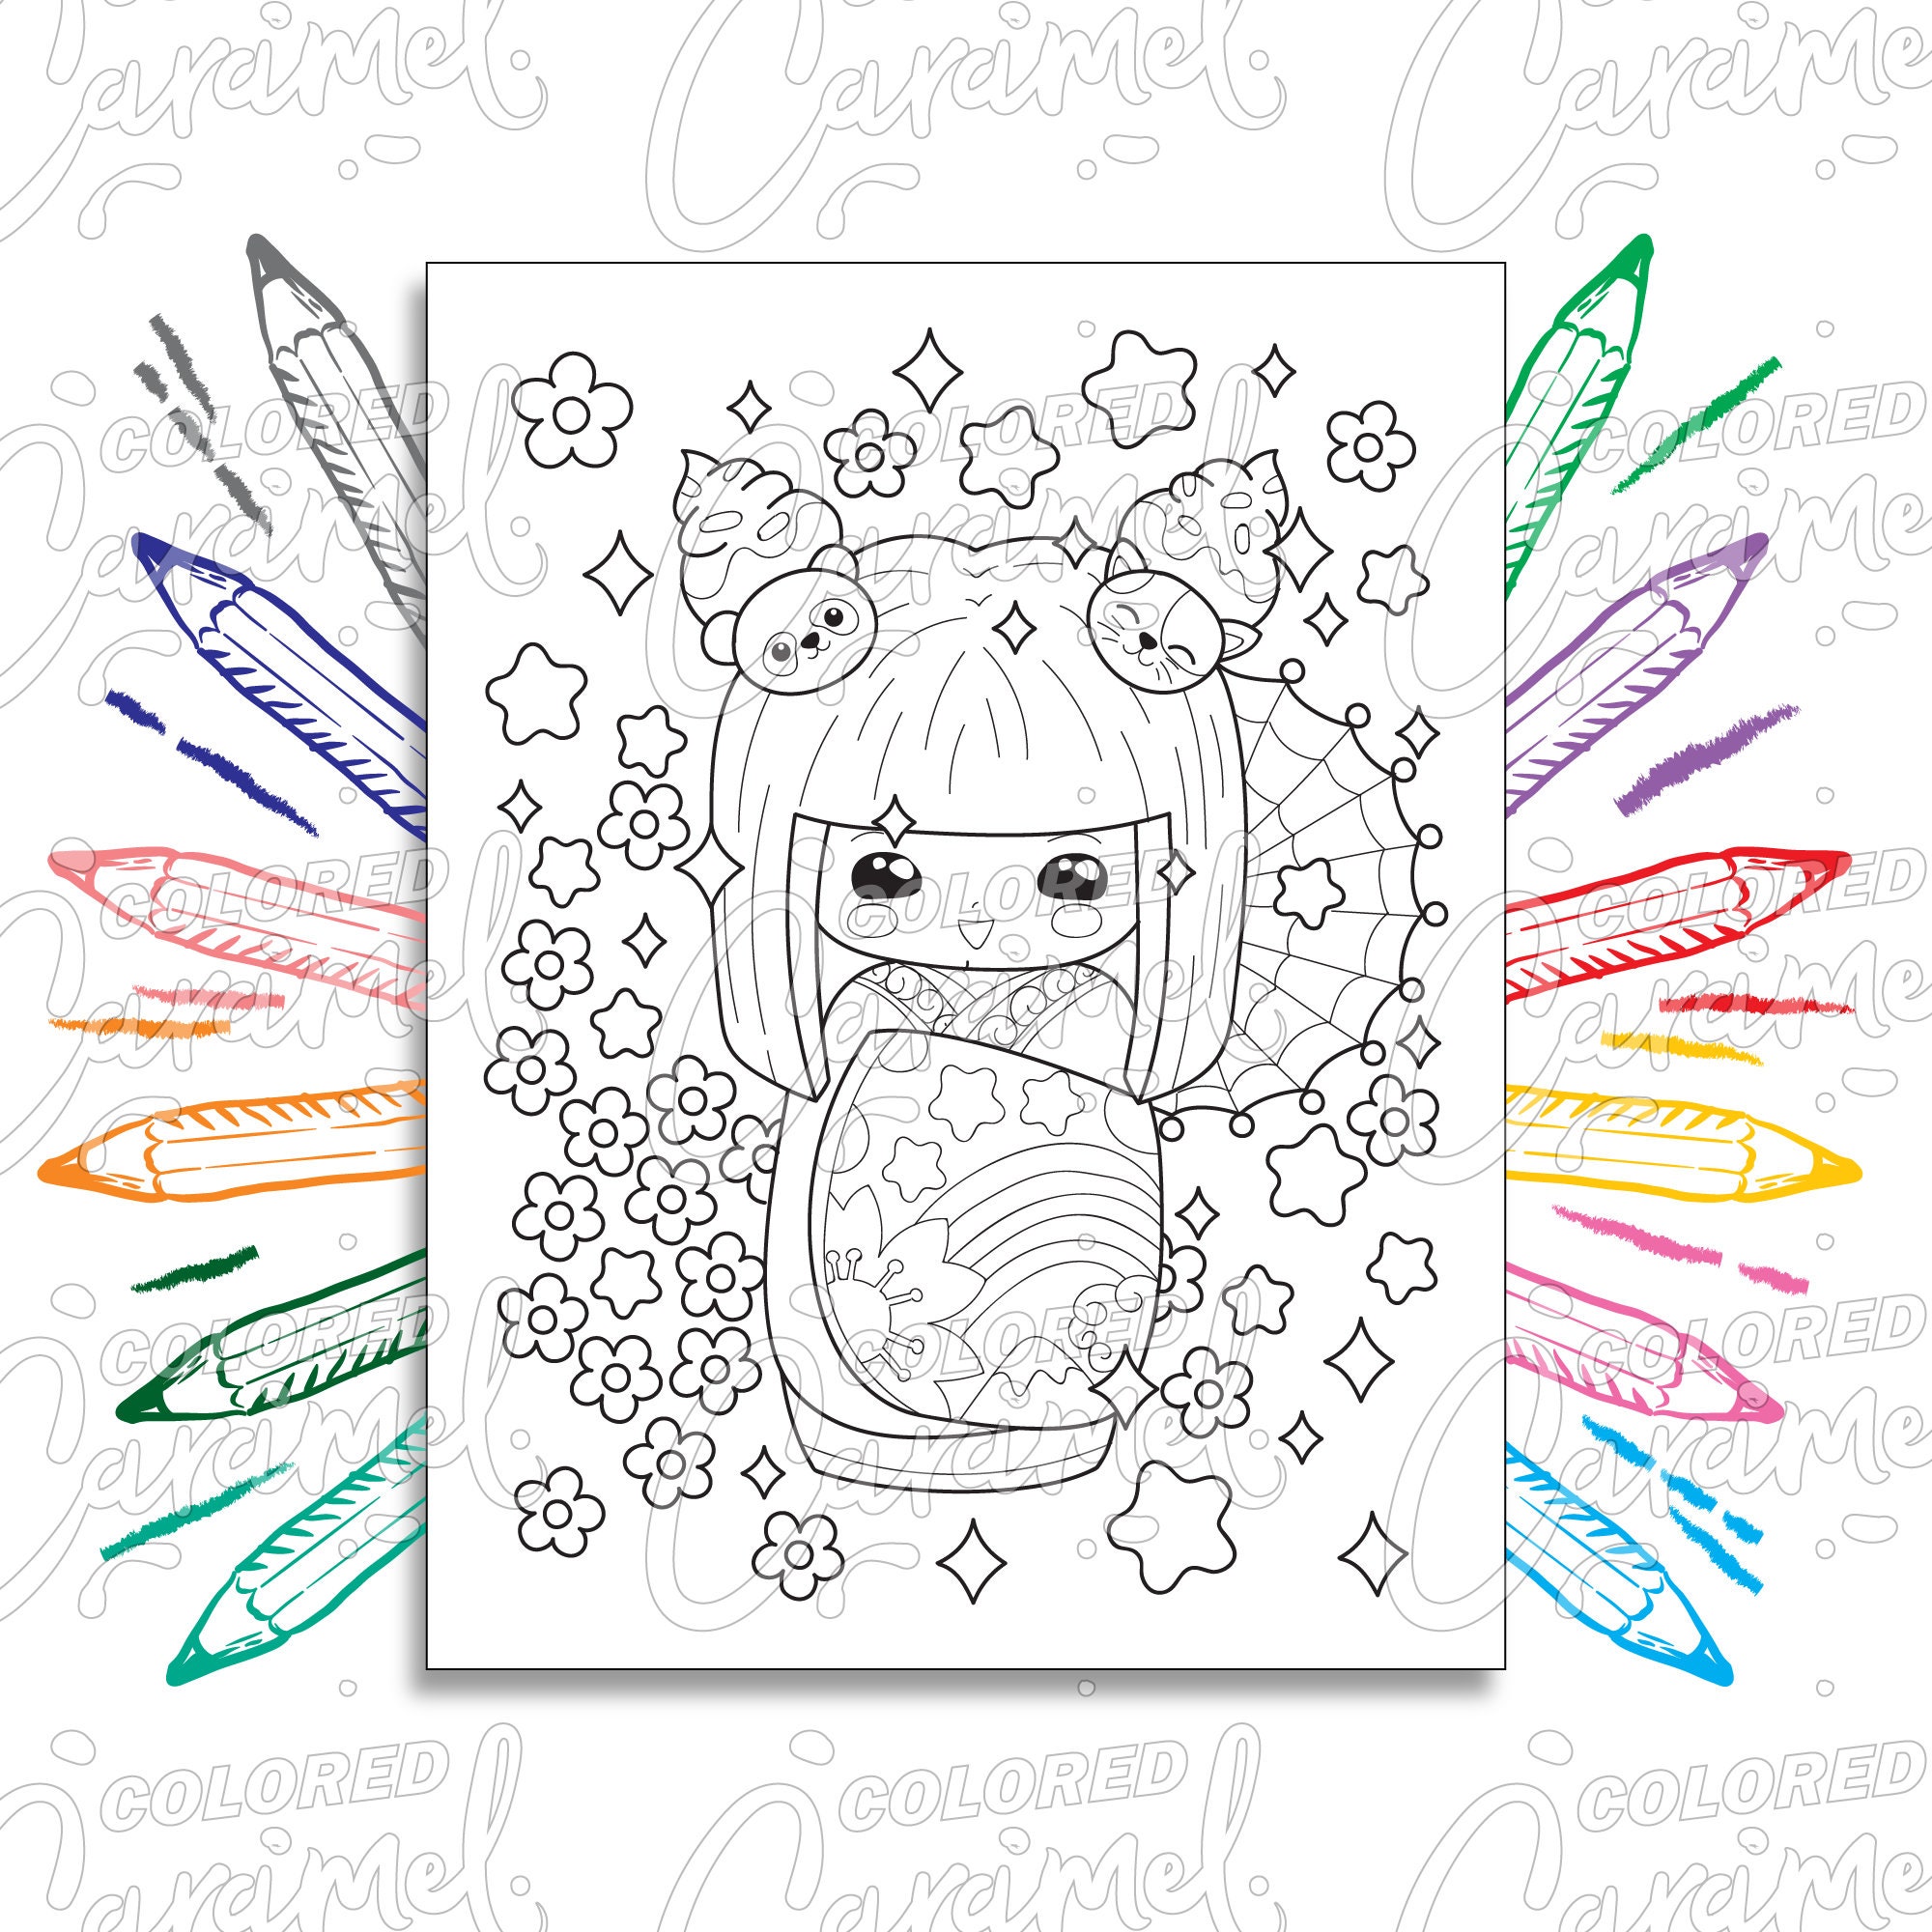 Buy Arte kawaii incrível - Livro de colorir - Desenhos adoráveis e